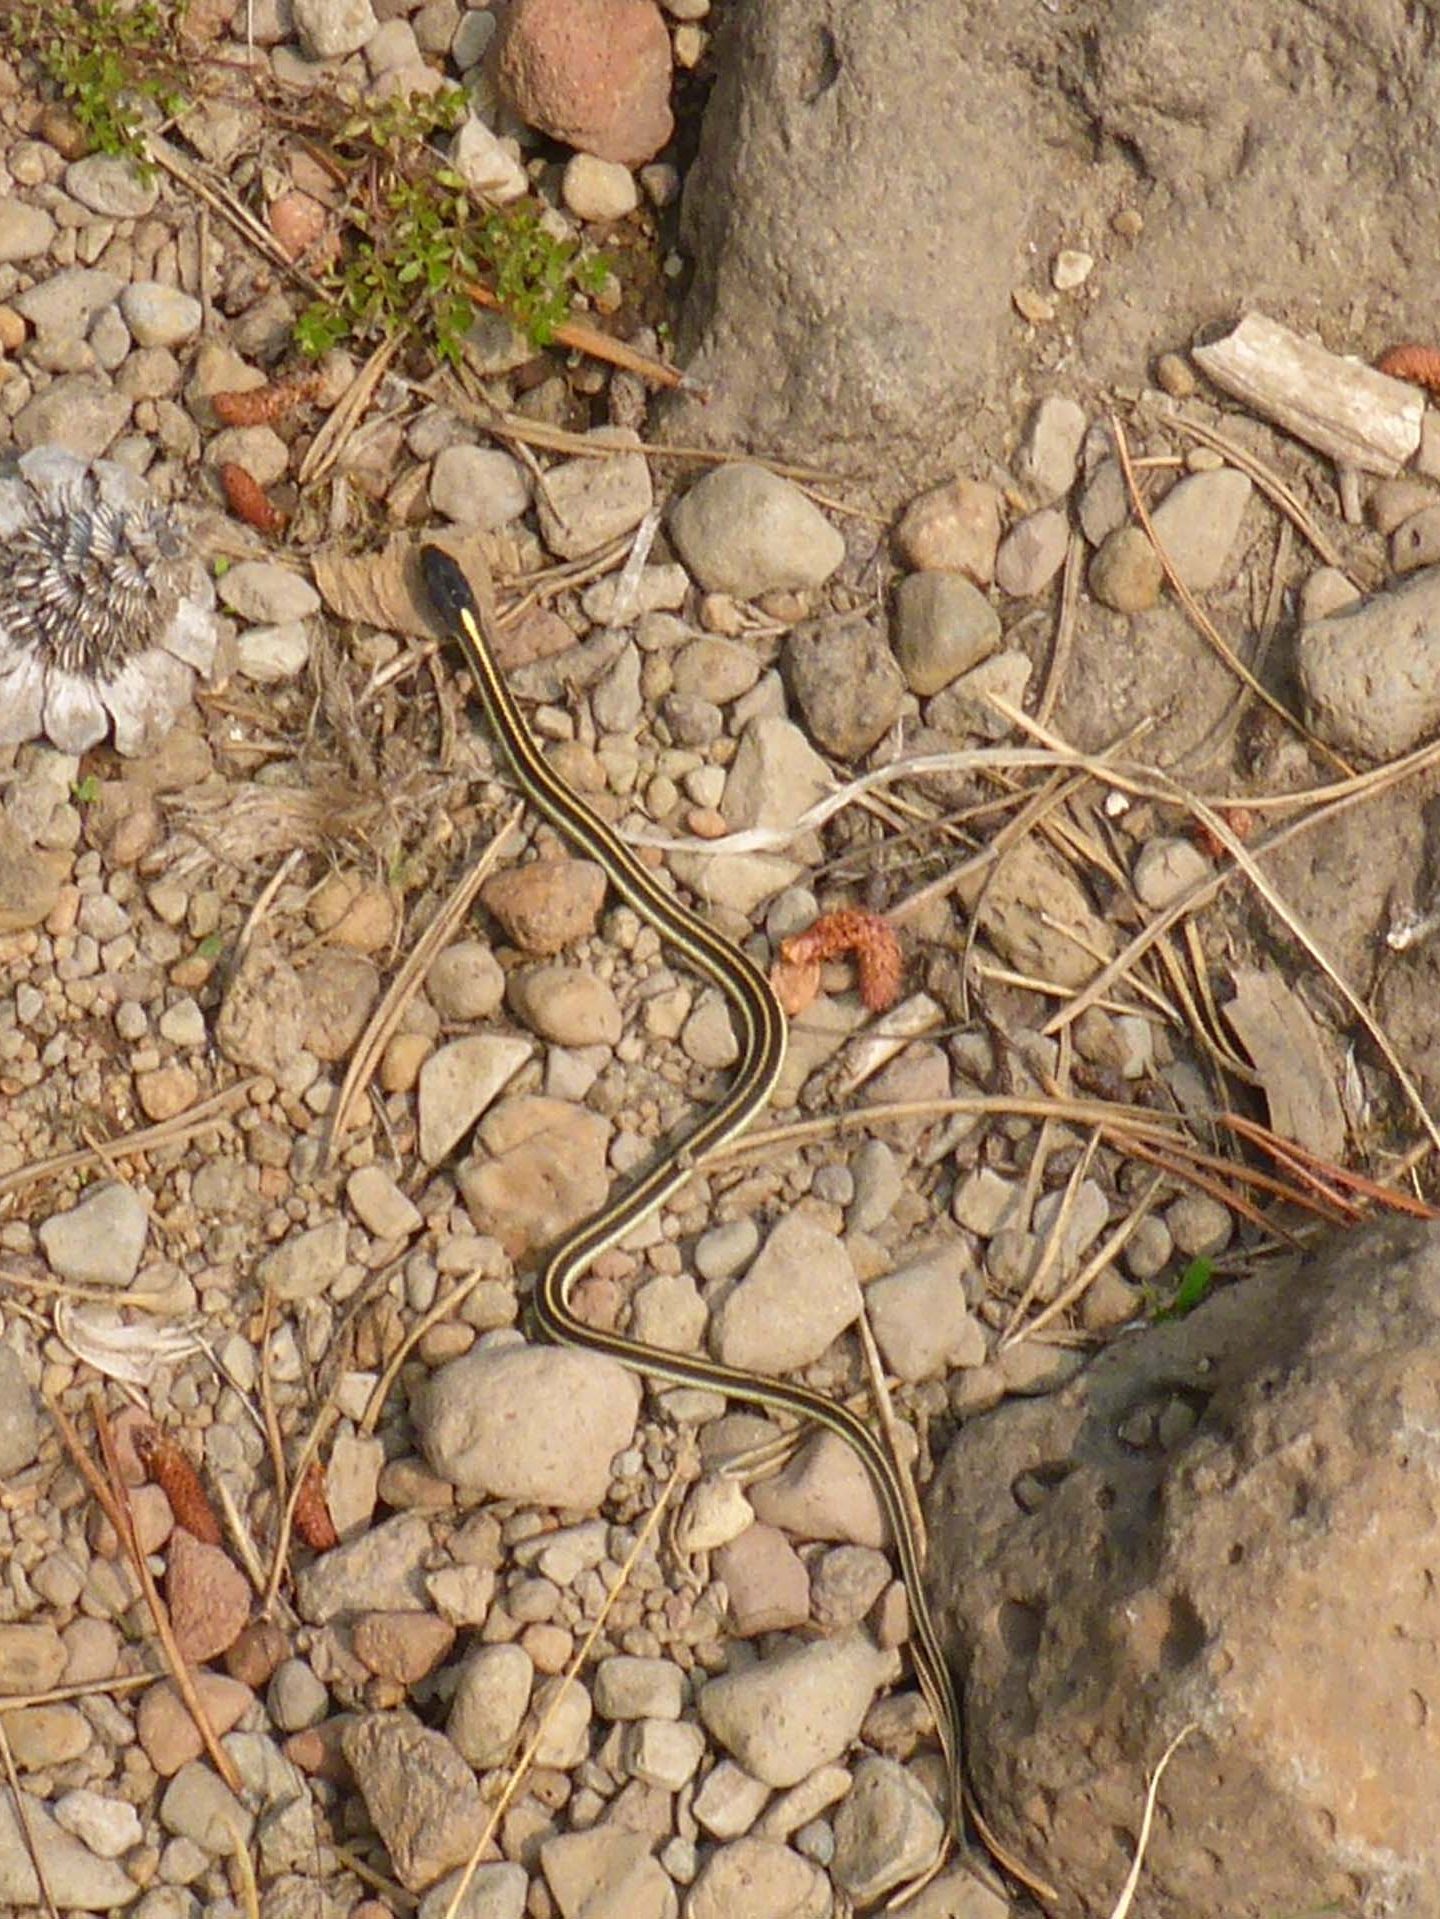 Mountain garter snake. D. Burk.